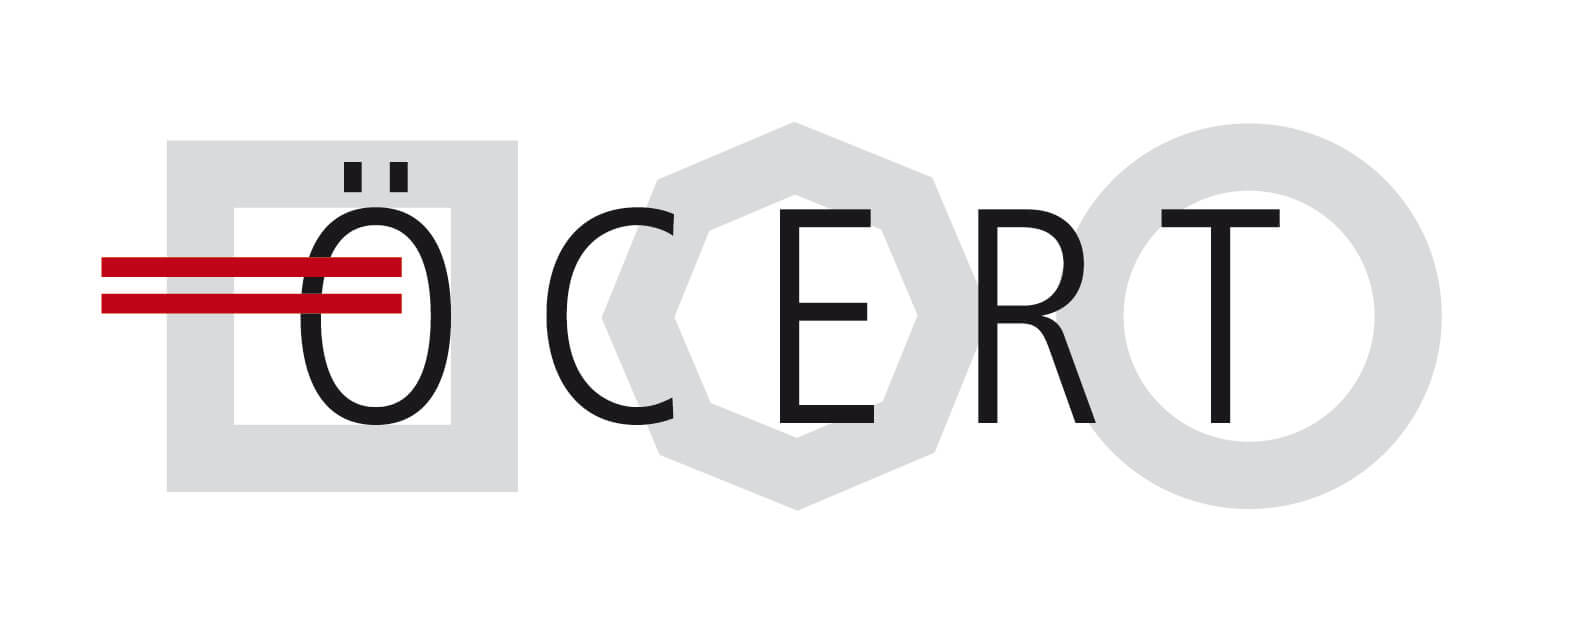 Ö-Cert-Logo mit schwarzem Schriftzug